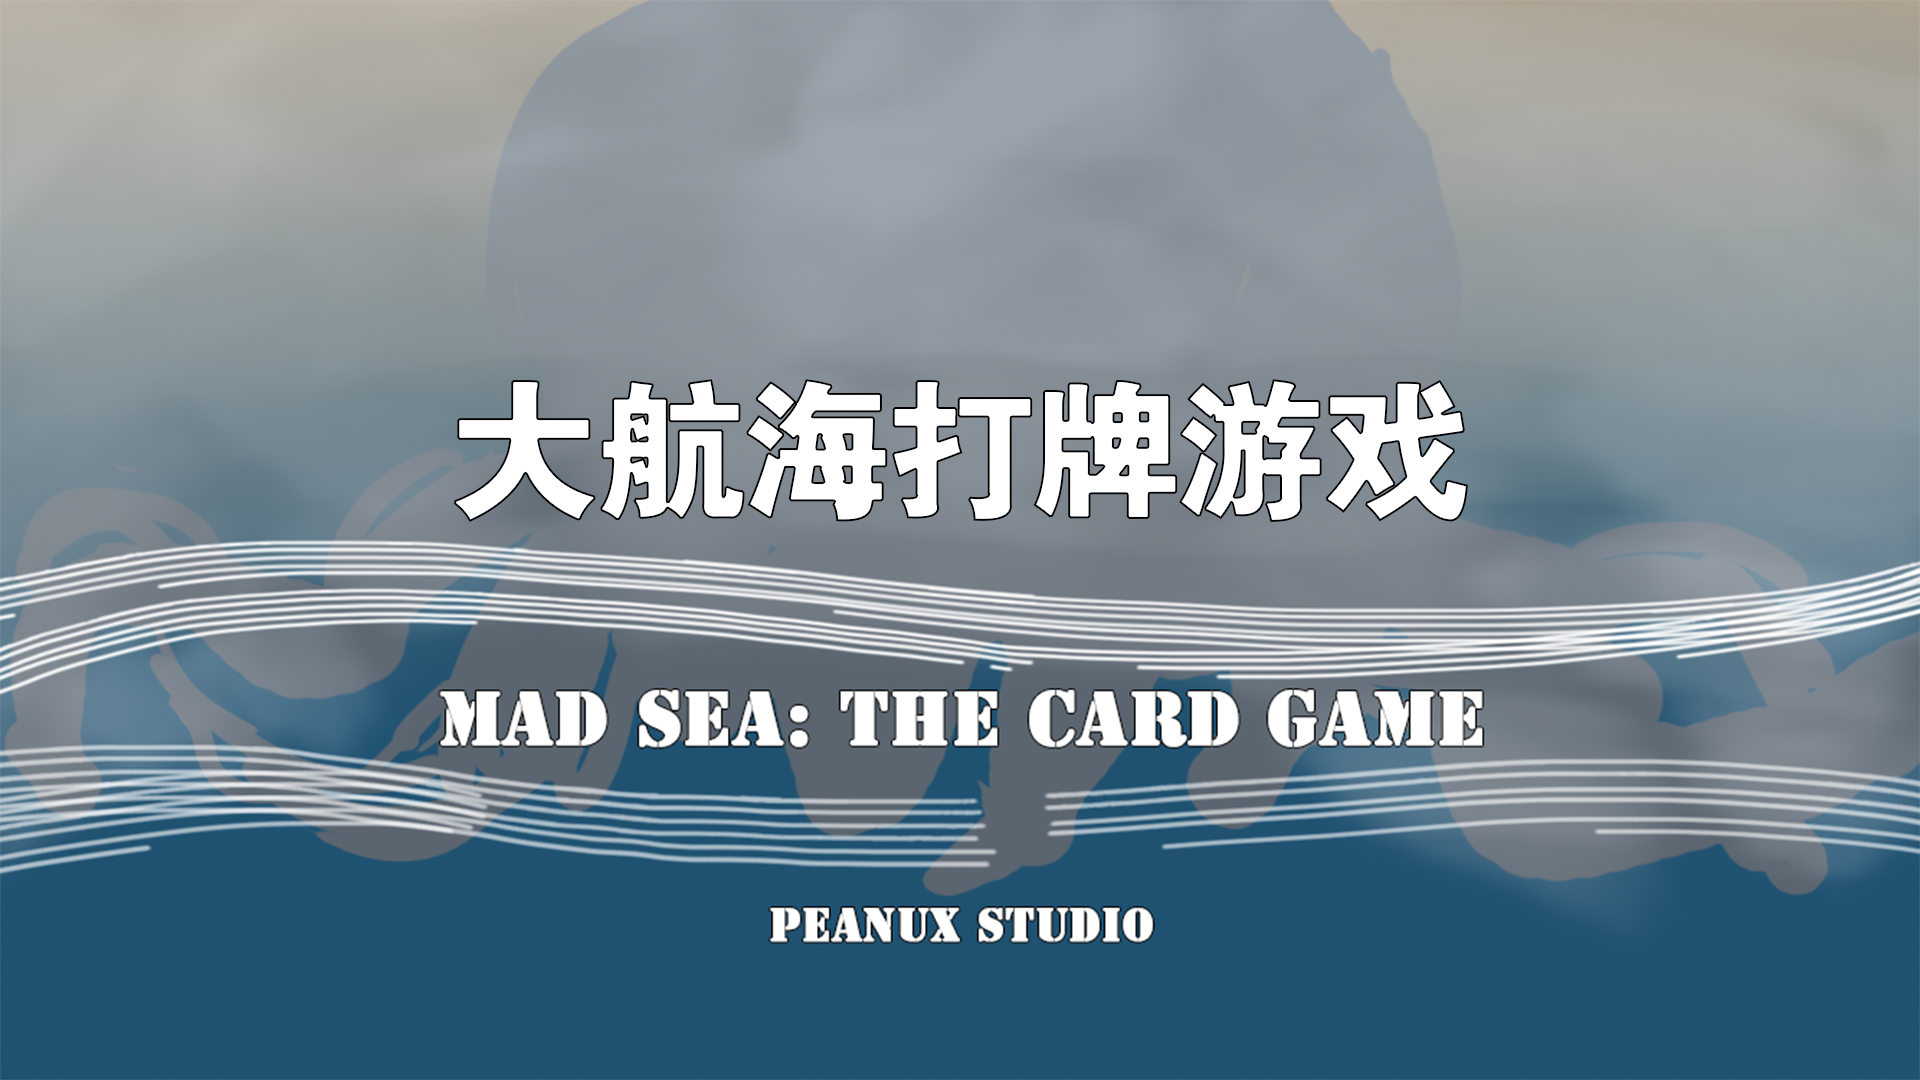 Banner of 위대한 항해 카드 게임 